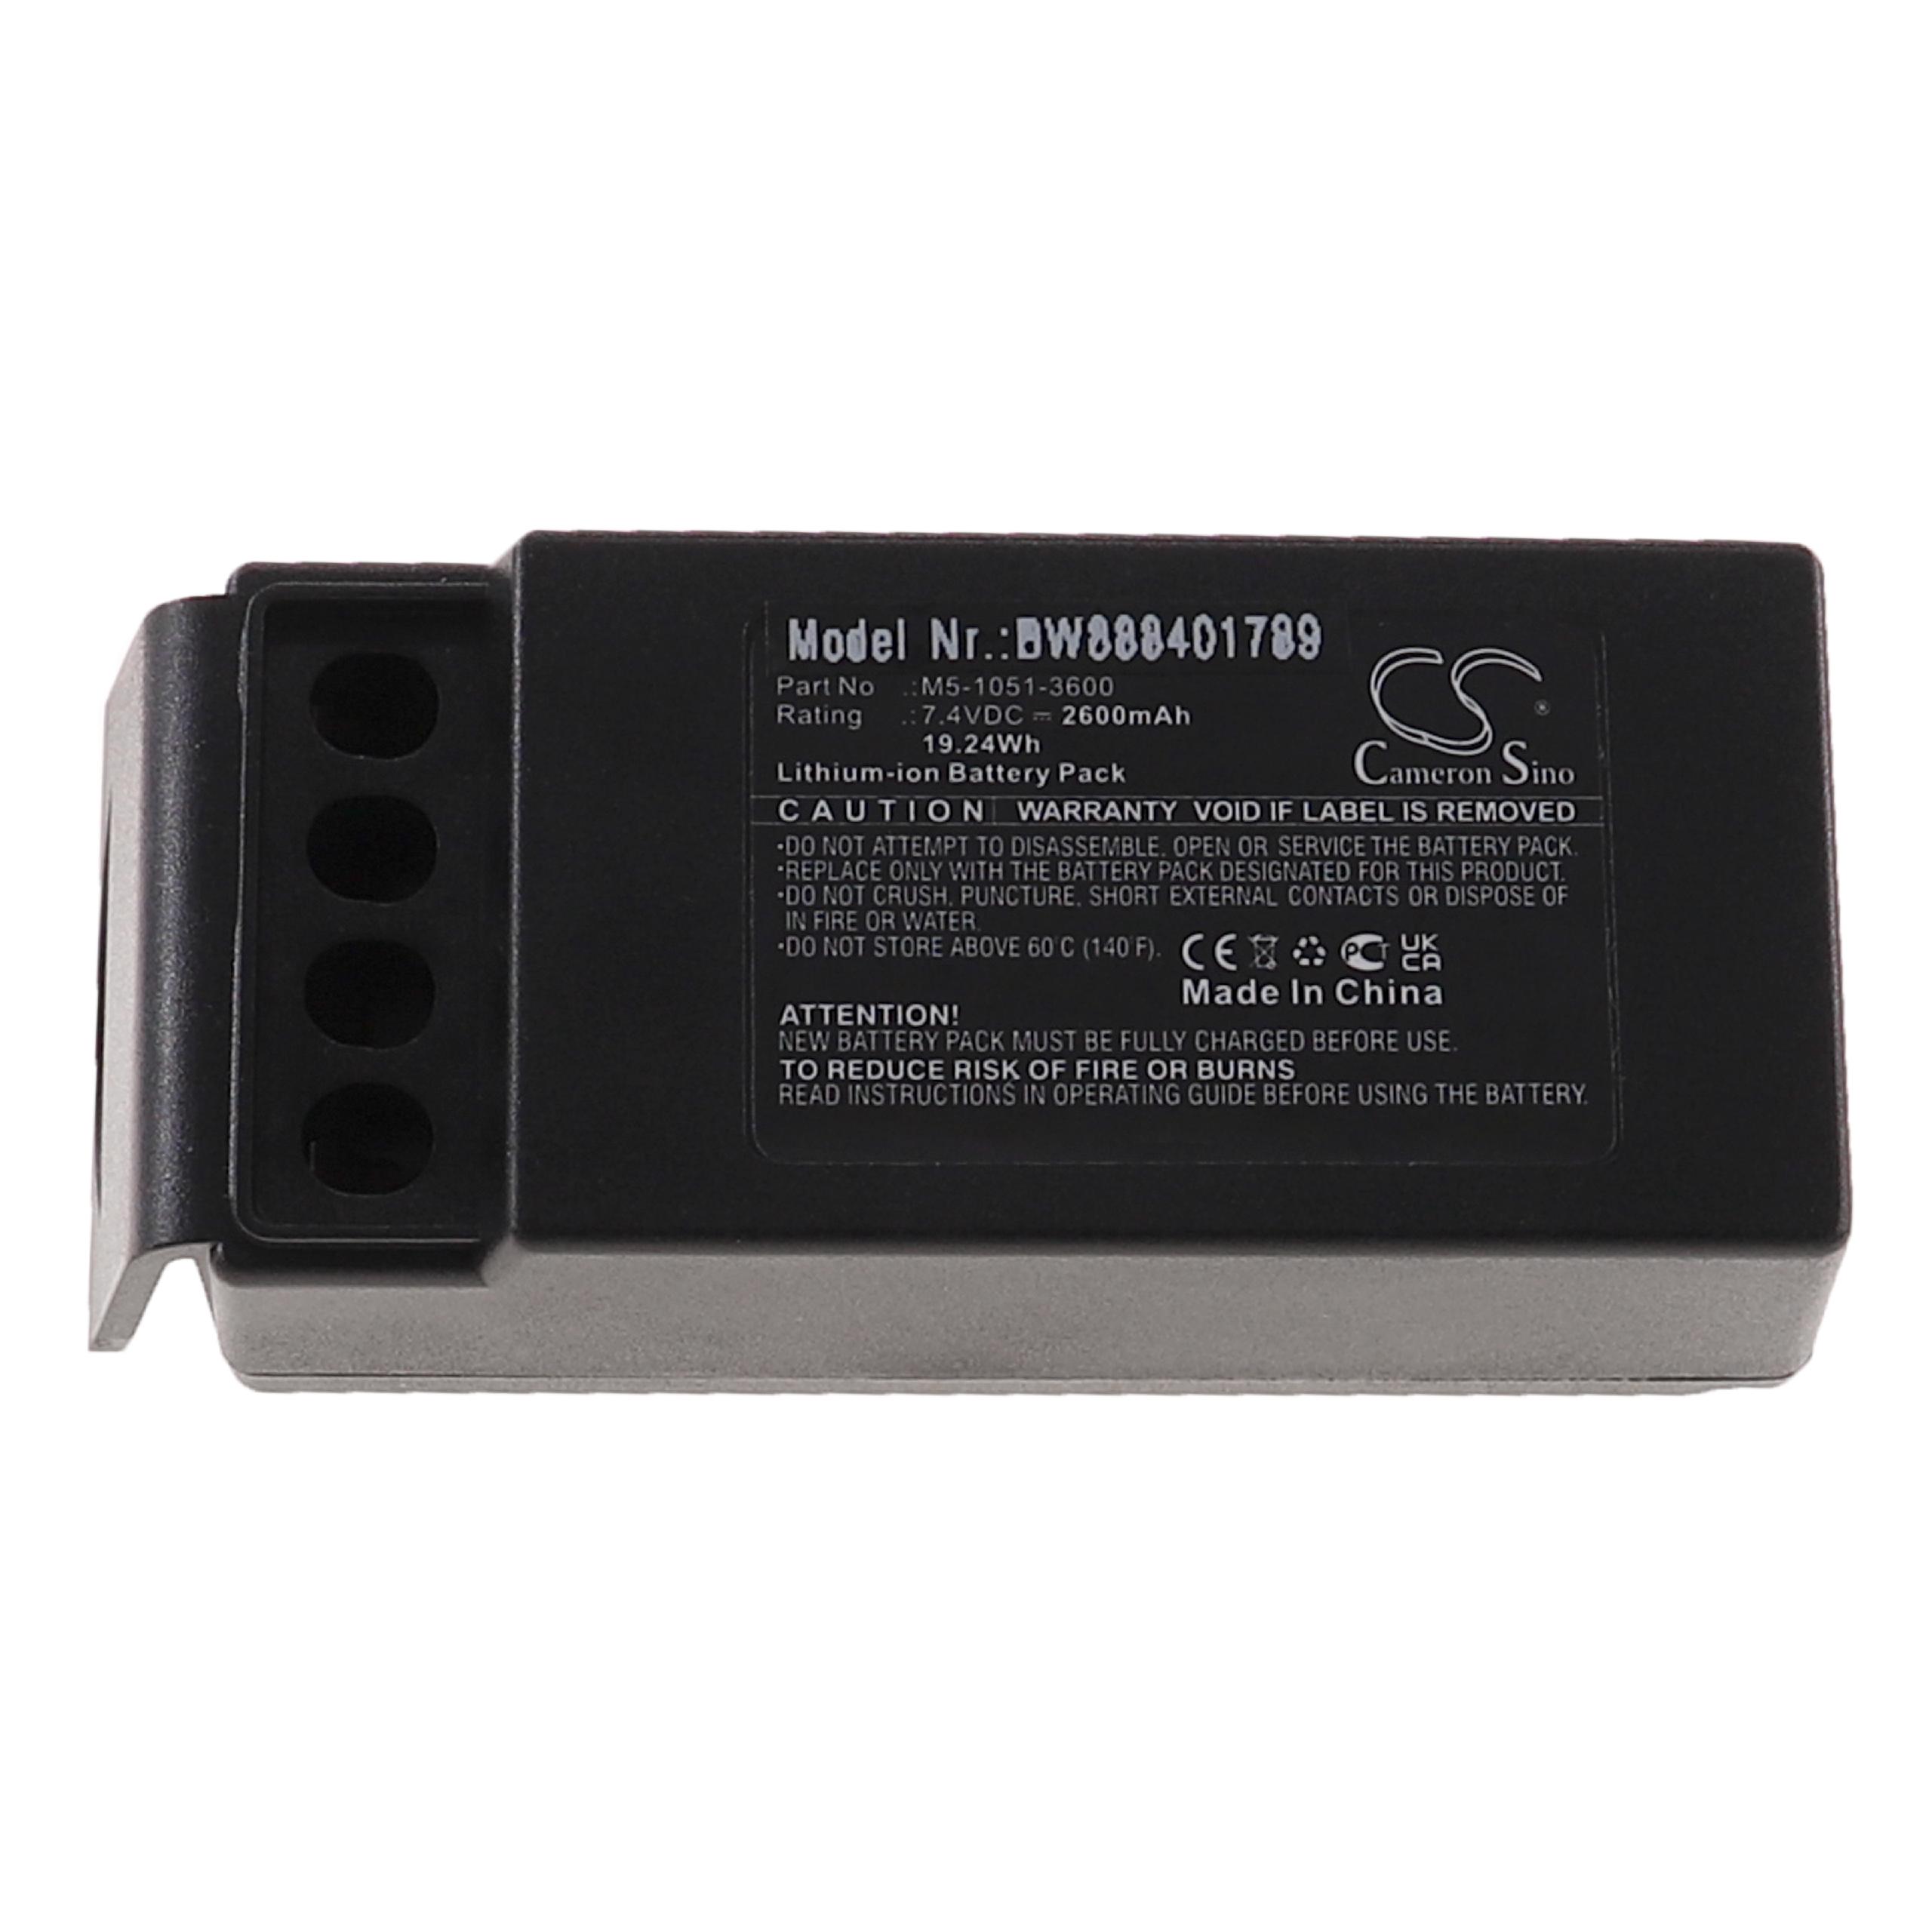 Batterie remplace Cavotec M5-1051-3600 pour télécomande industrielle - 2600mAh 7,4V Li-ion